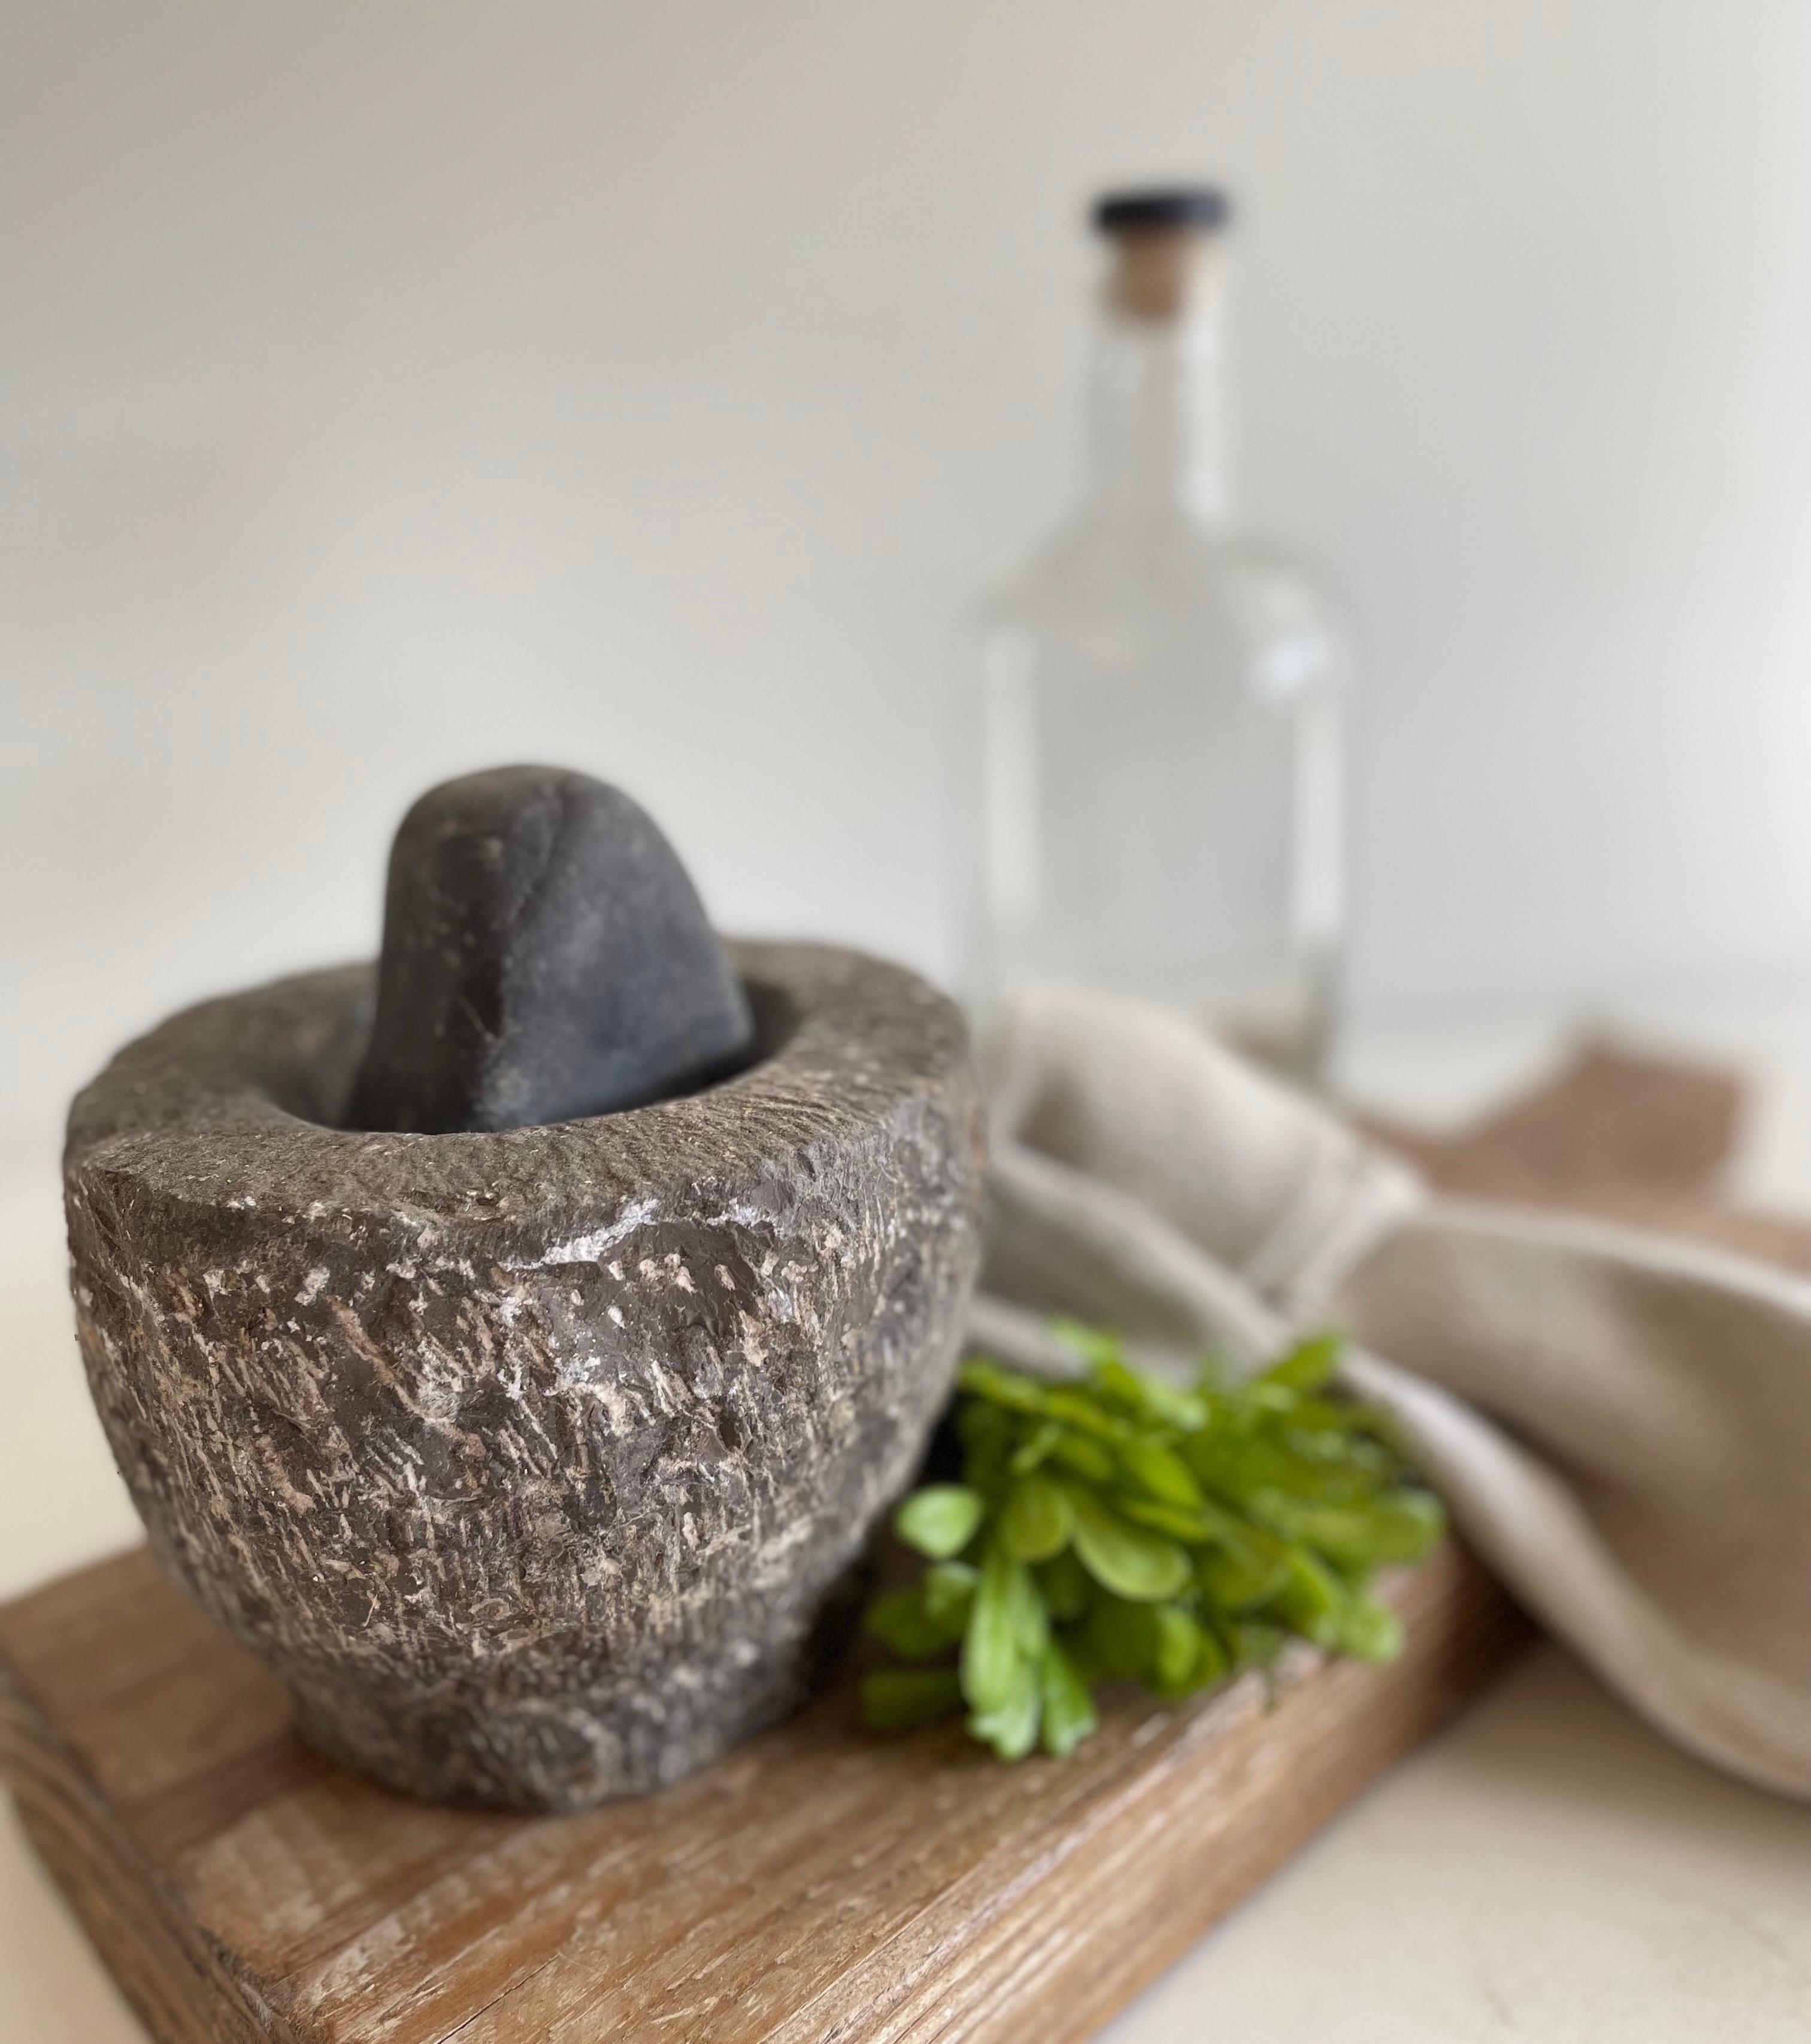 Antique Stone Mortar and Pestle bowl set
Size: 5 1/2”D x 4”H.